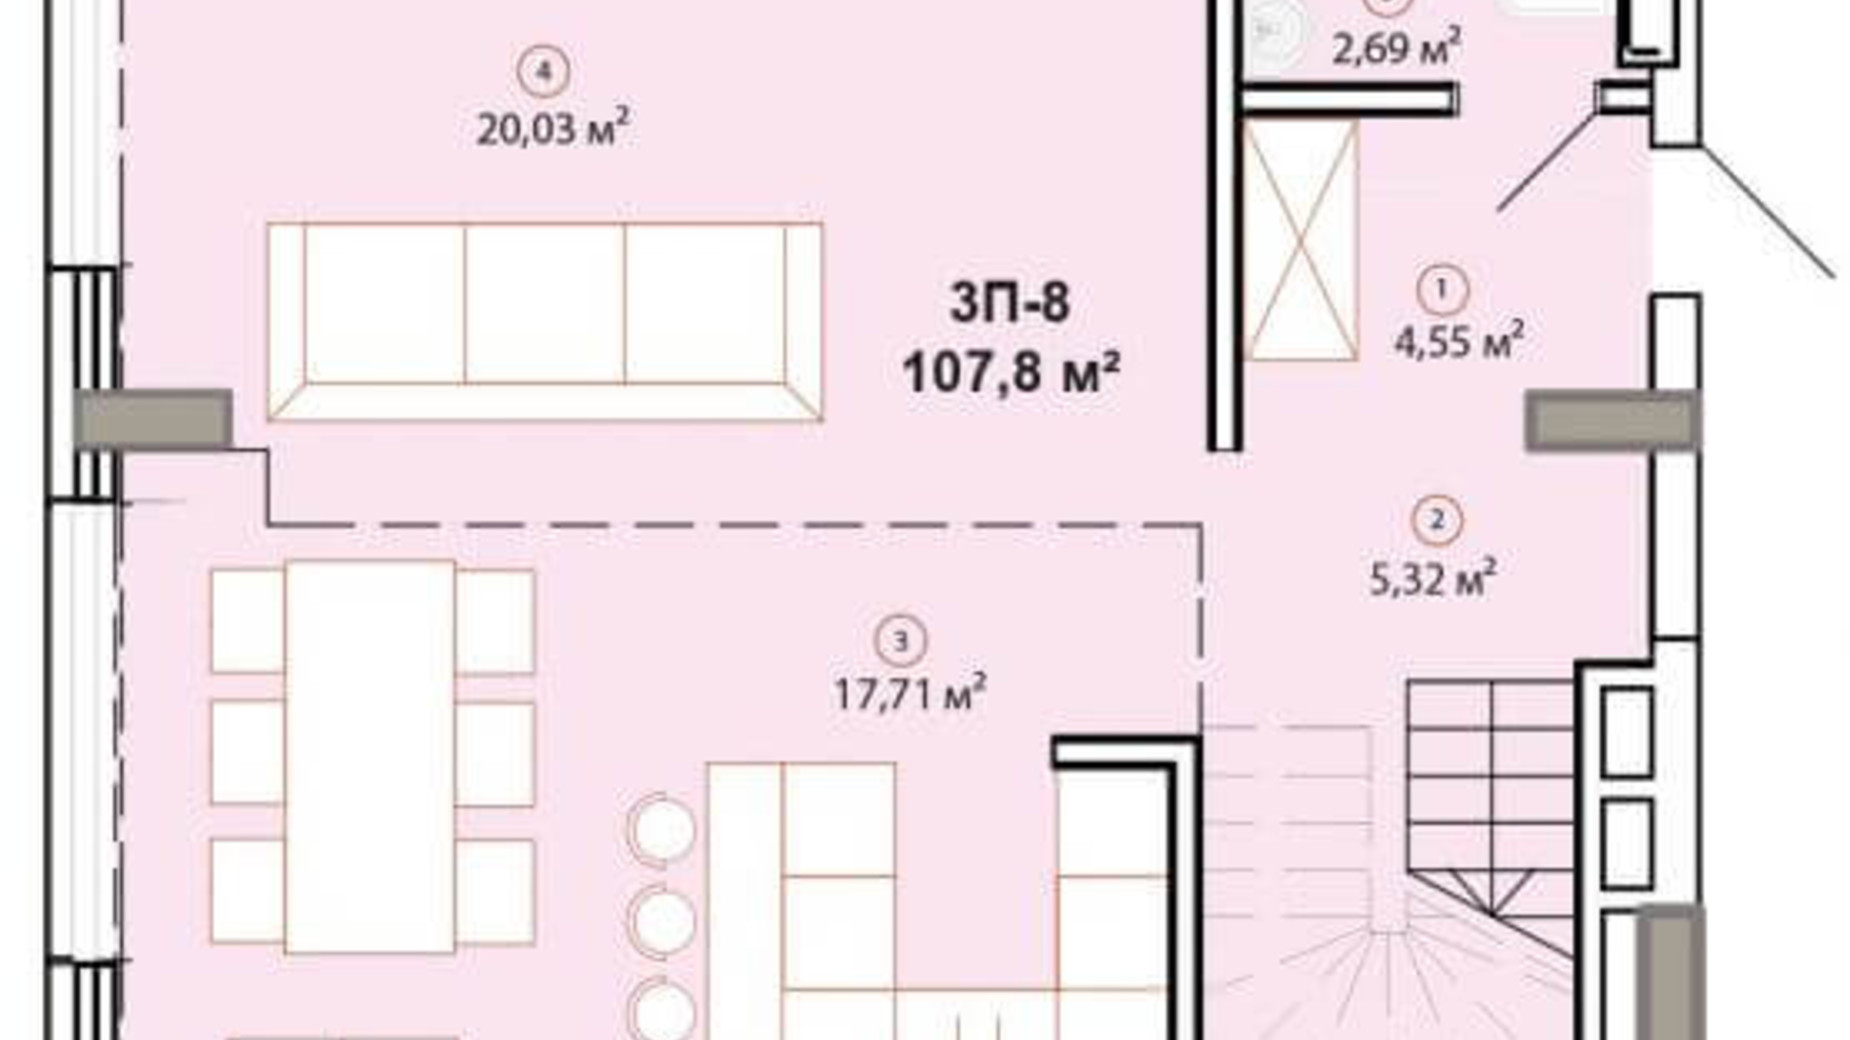 Планировка много­уровневой квартиры в ЖК Edelweiss House 107.8 м², фото 225154